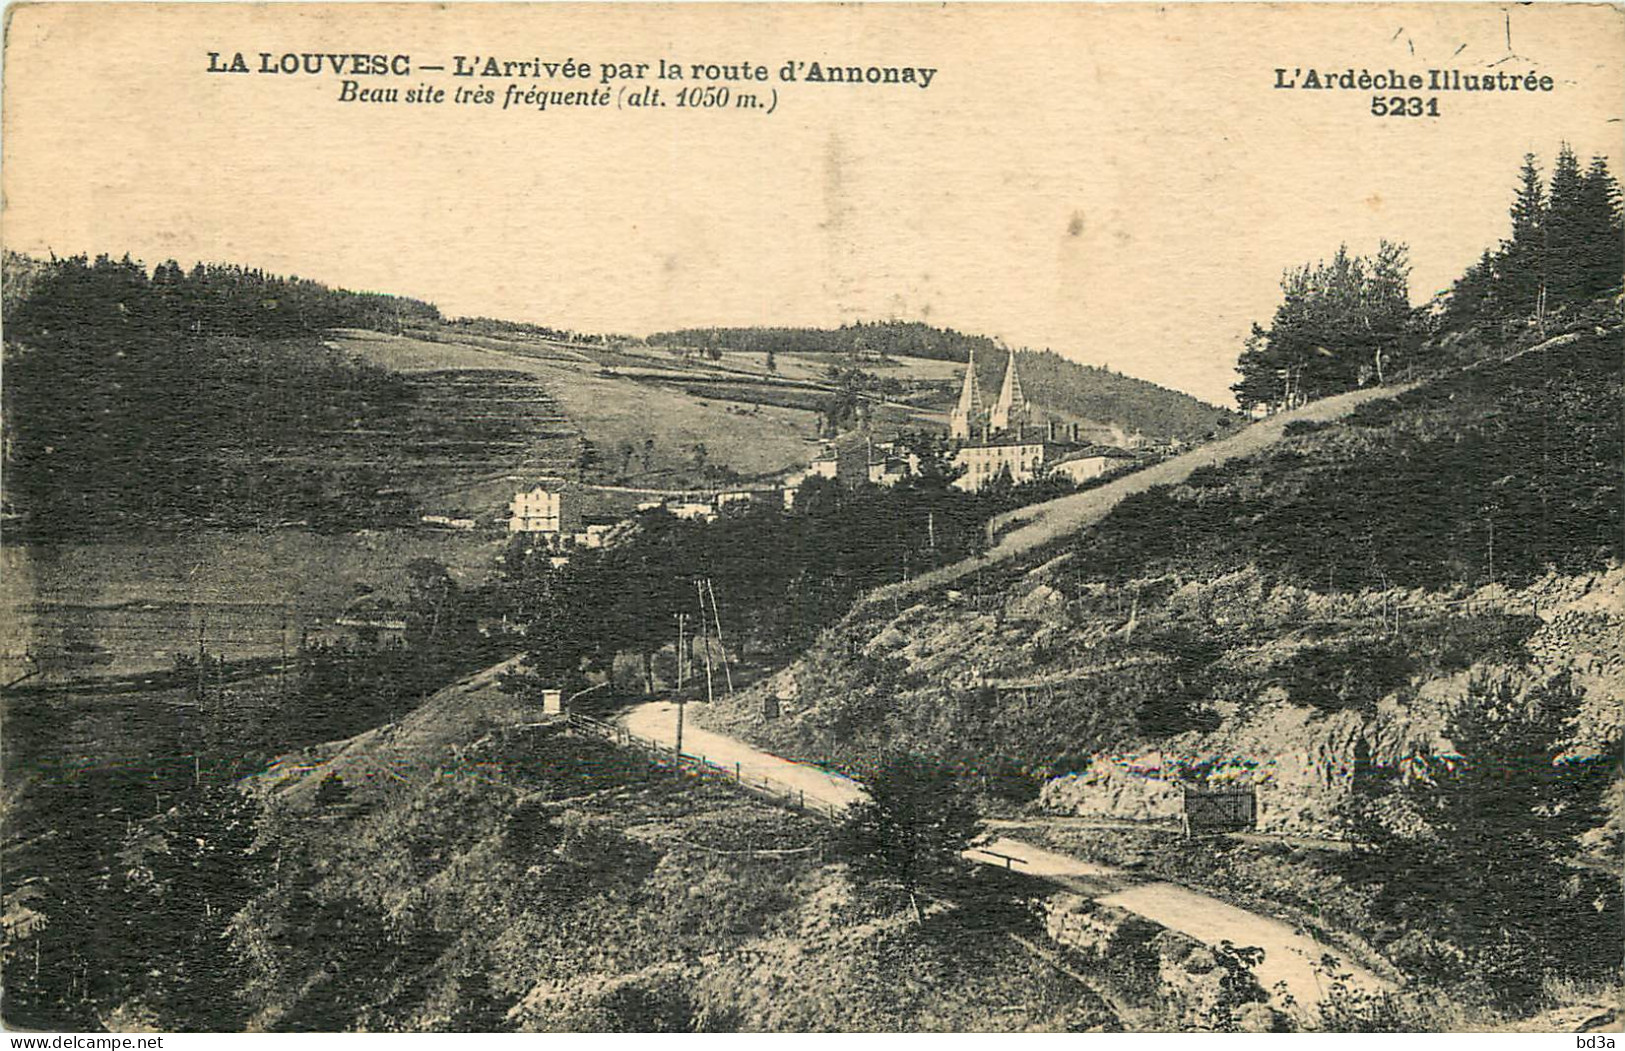 07 - LA LOUVESC - L'ARRIVEE PAR LA ROUTE D'ANNONAY - La Louvesc